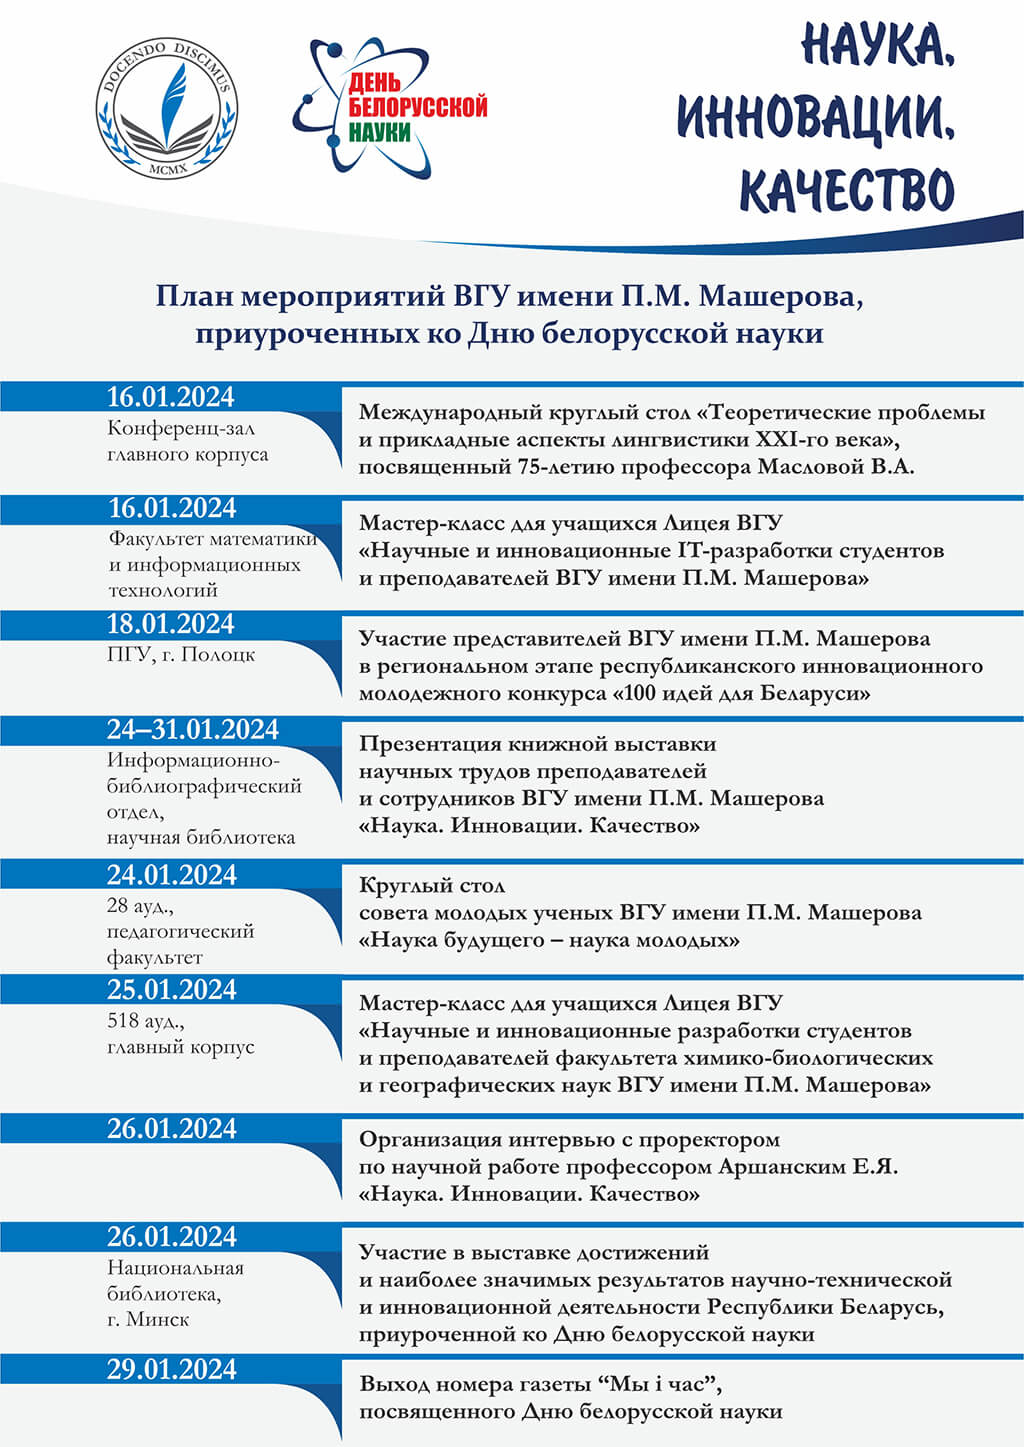 План мероприятий посвященных Дню белорусской науки в 2024 году